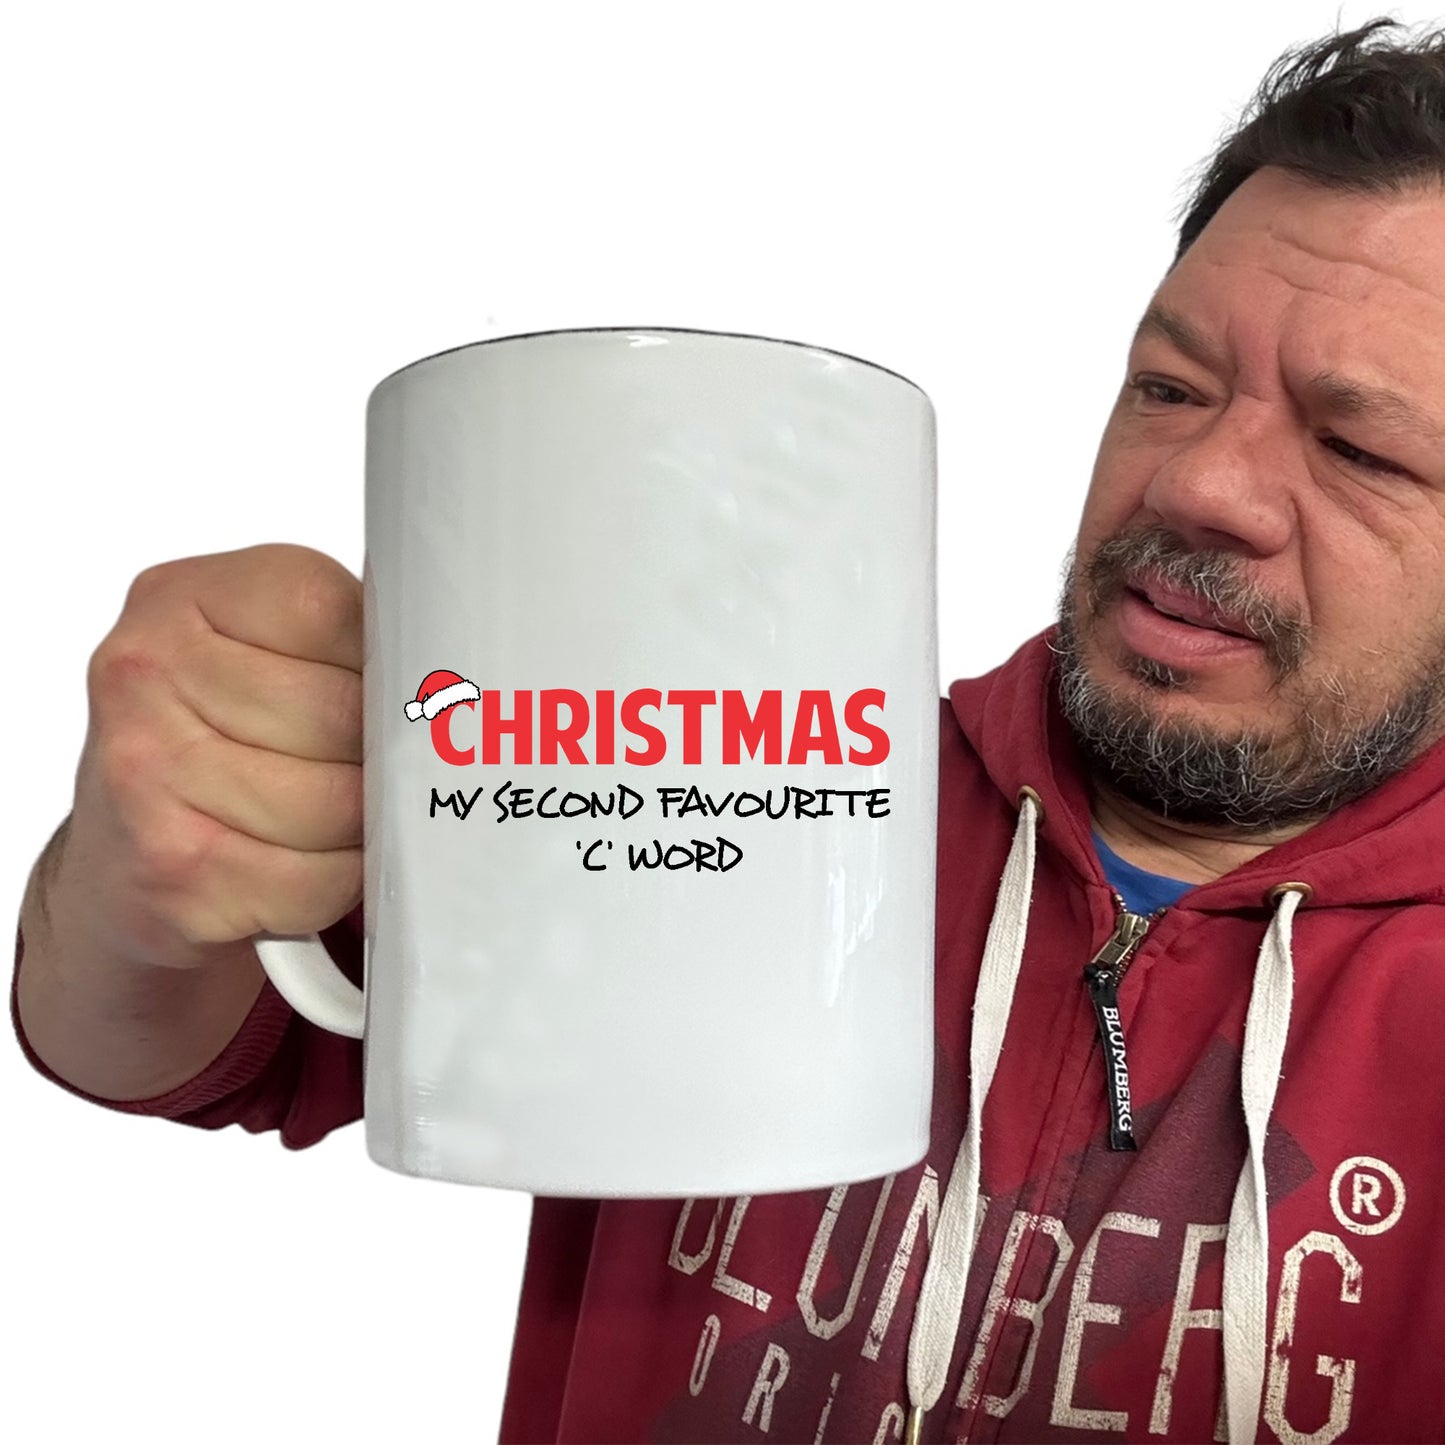 The Christmas Hub - Christmas My Second Favourite C Word - Funny Giant 2 Litre Mug